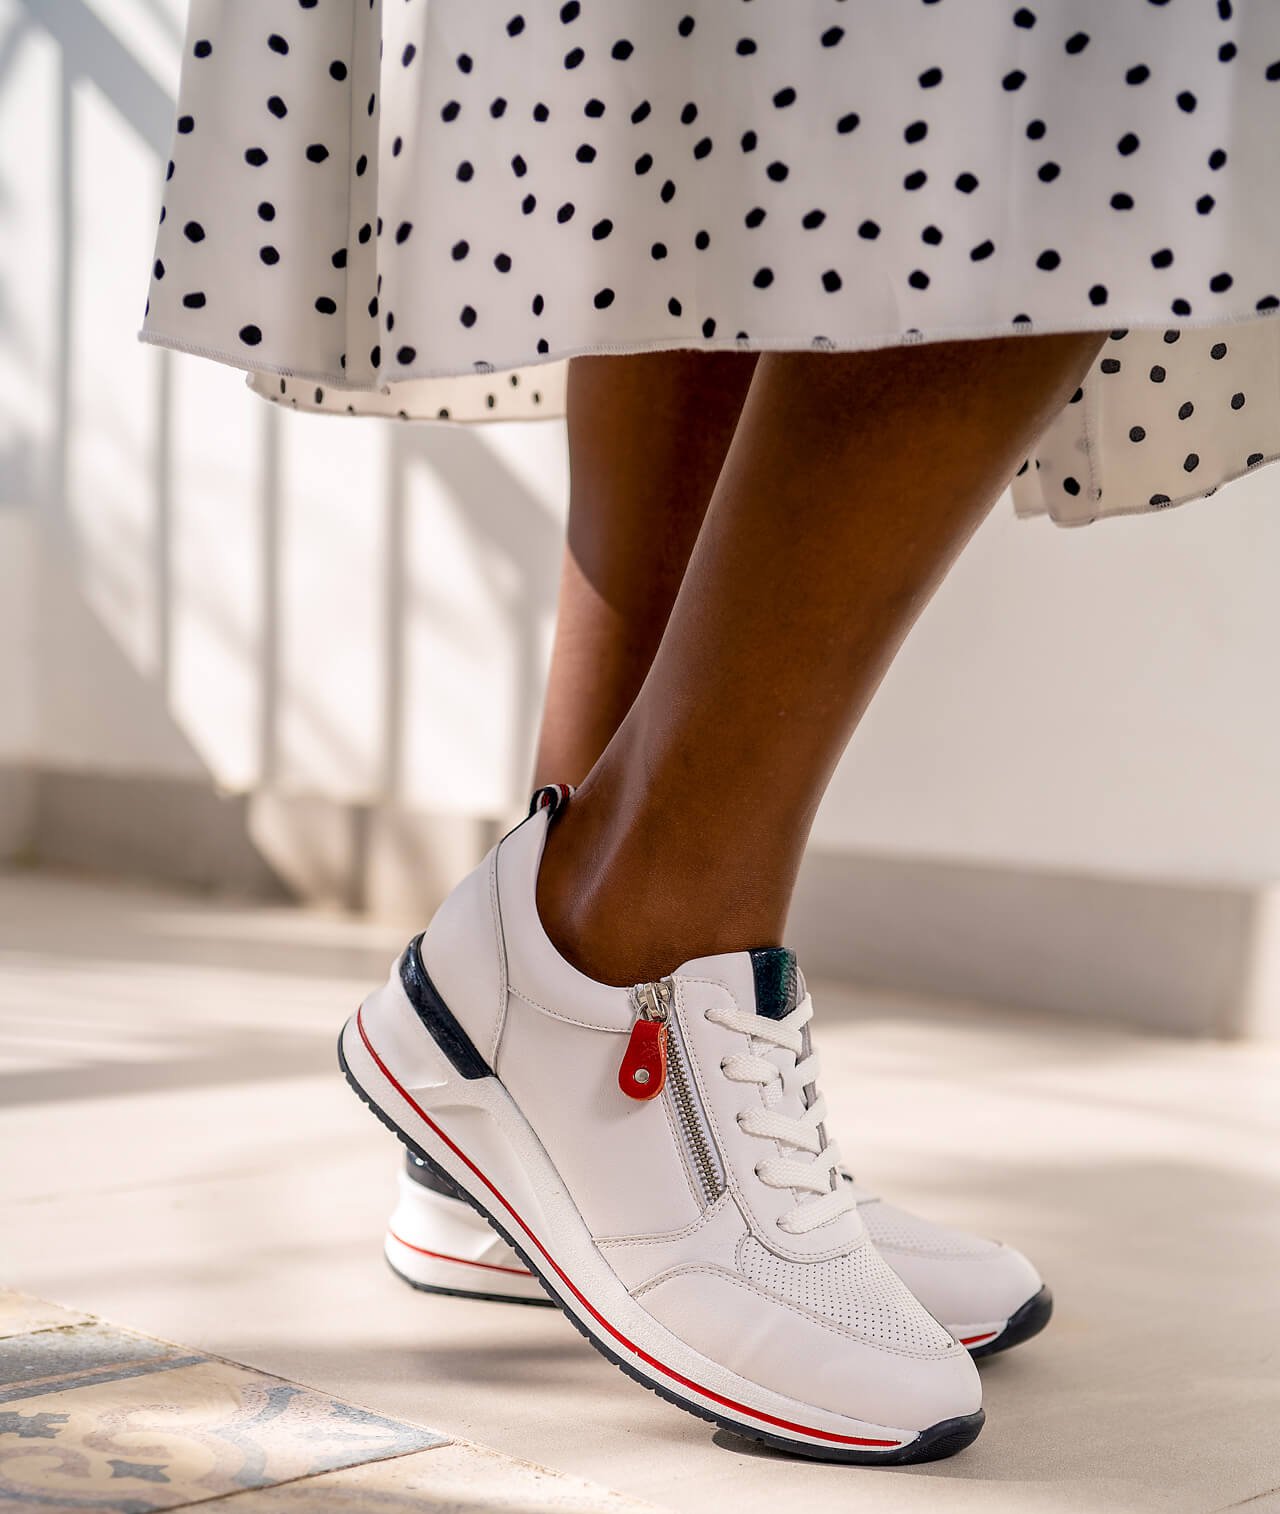 Weiße Damen Sneaker von Remonte mit schicken Akzenten in Blau und Rot.